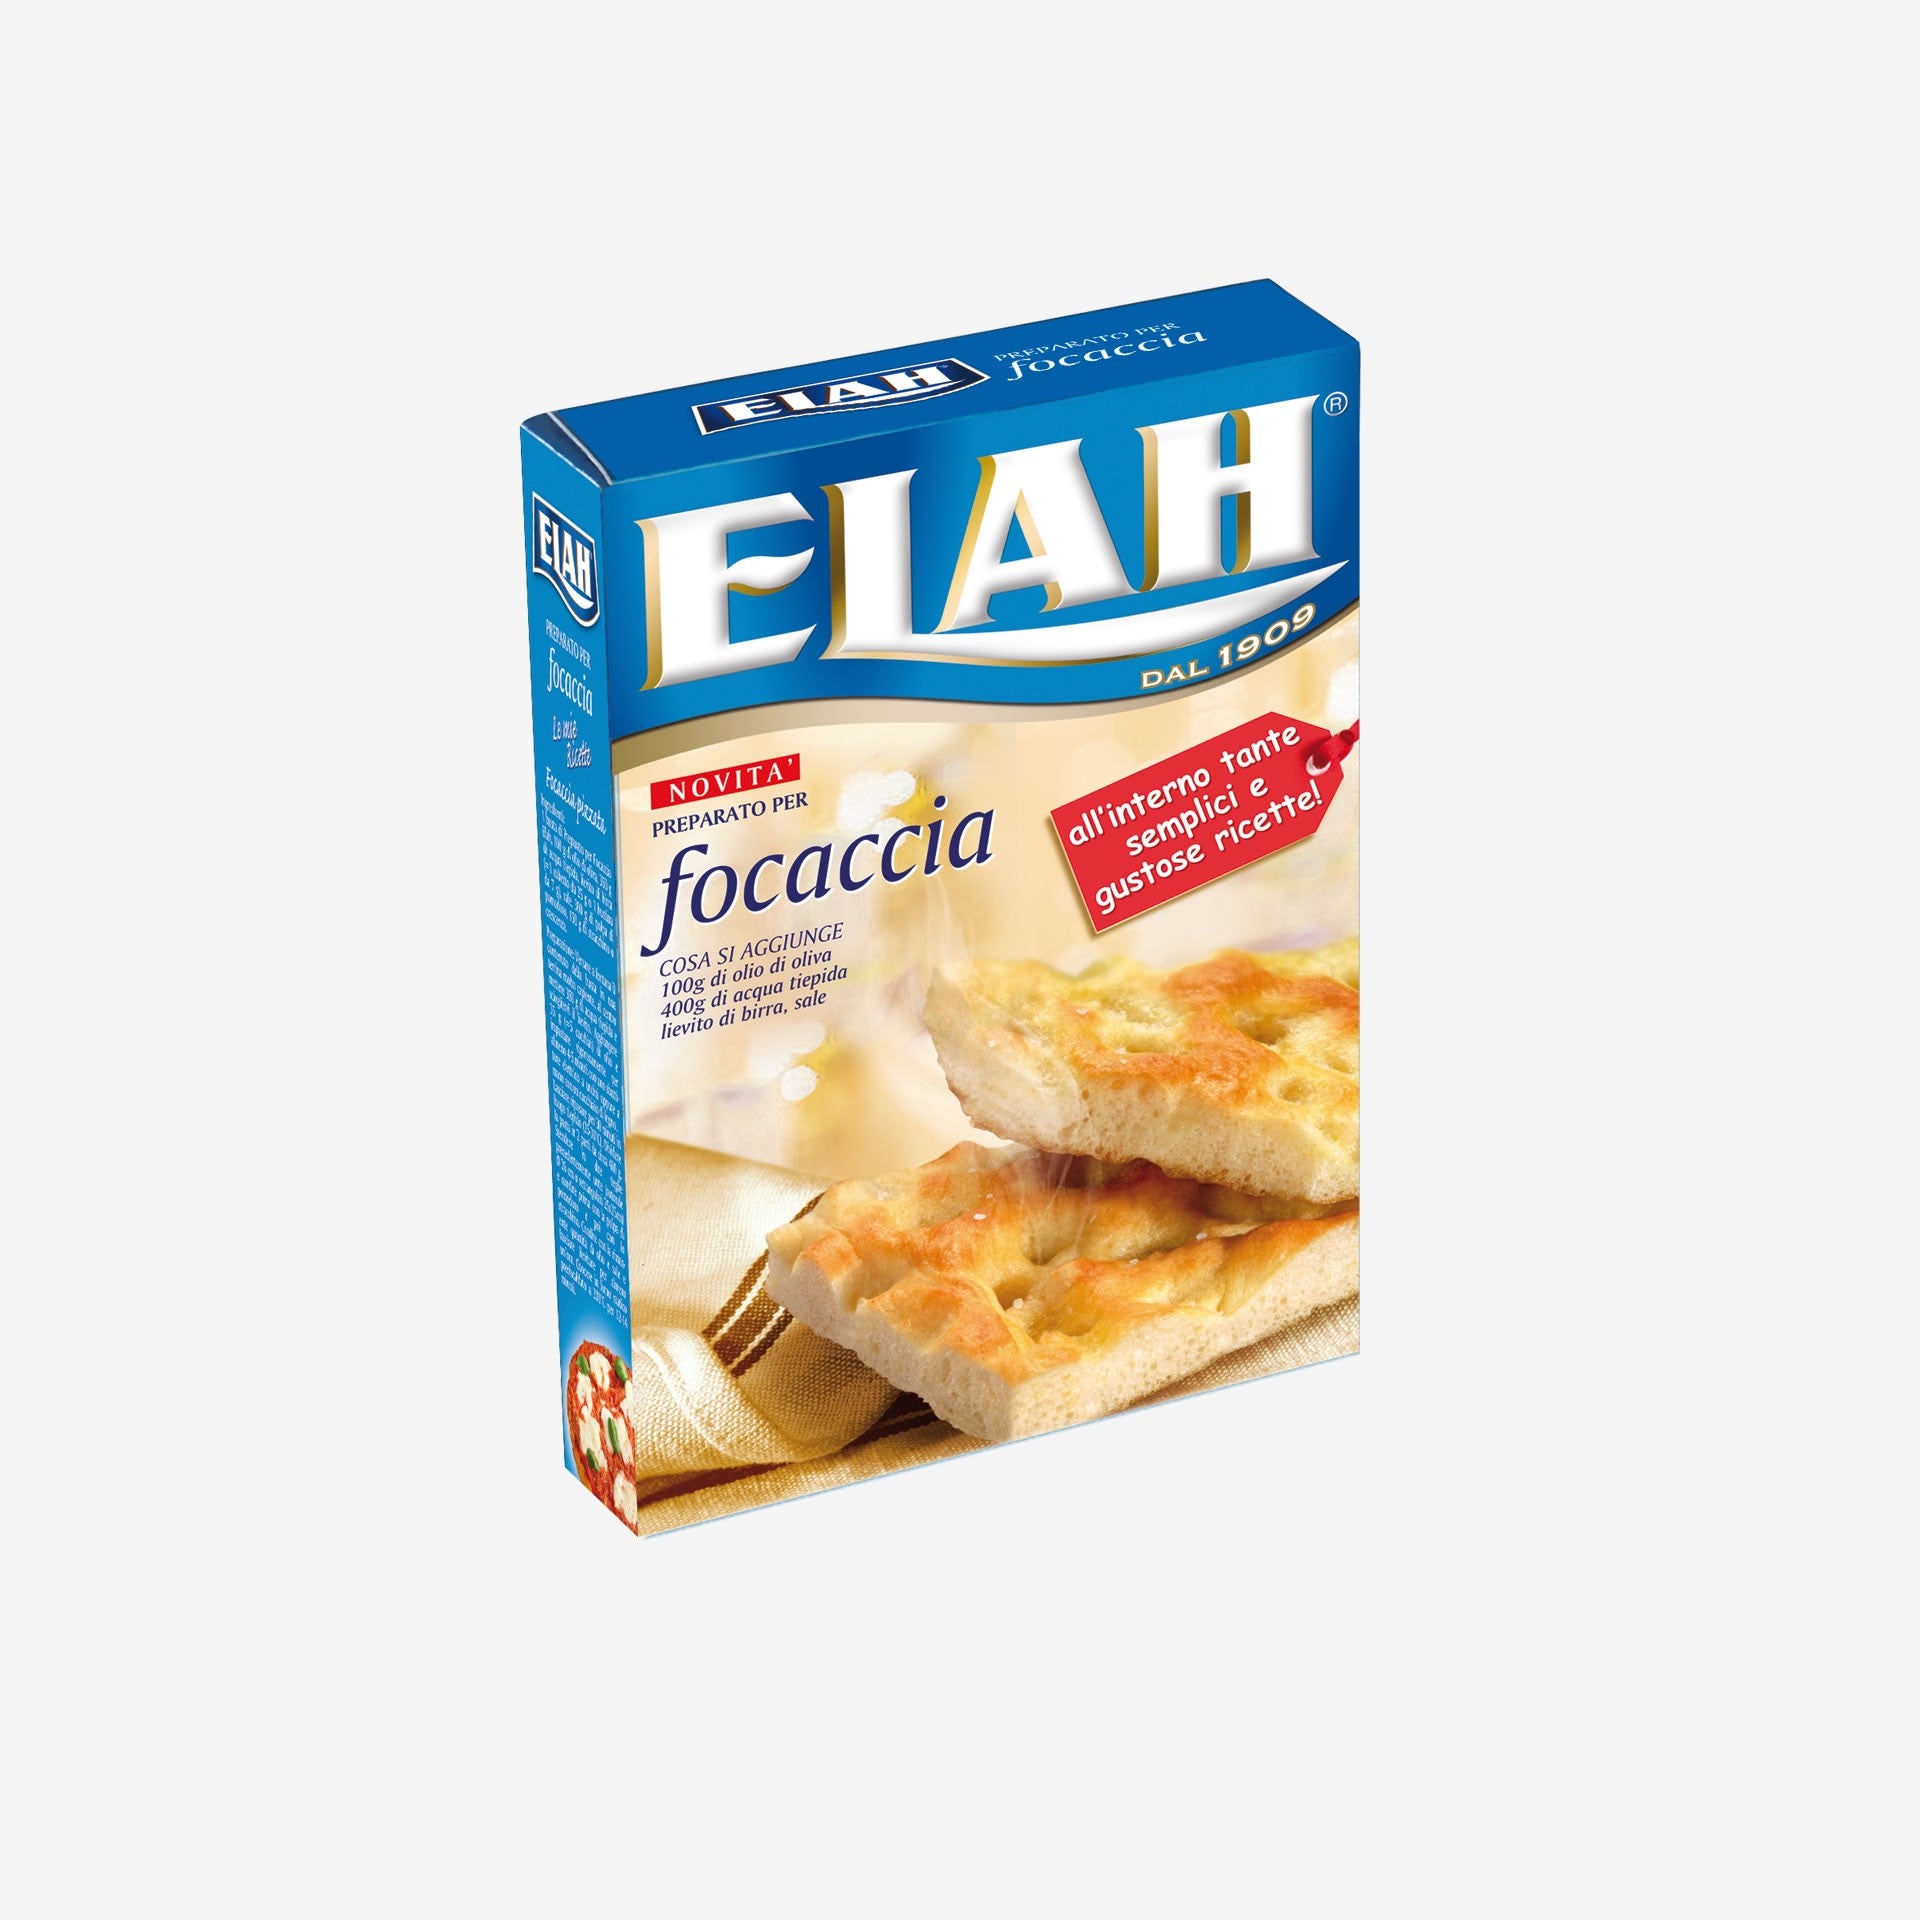 Classic Elah focaccia case